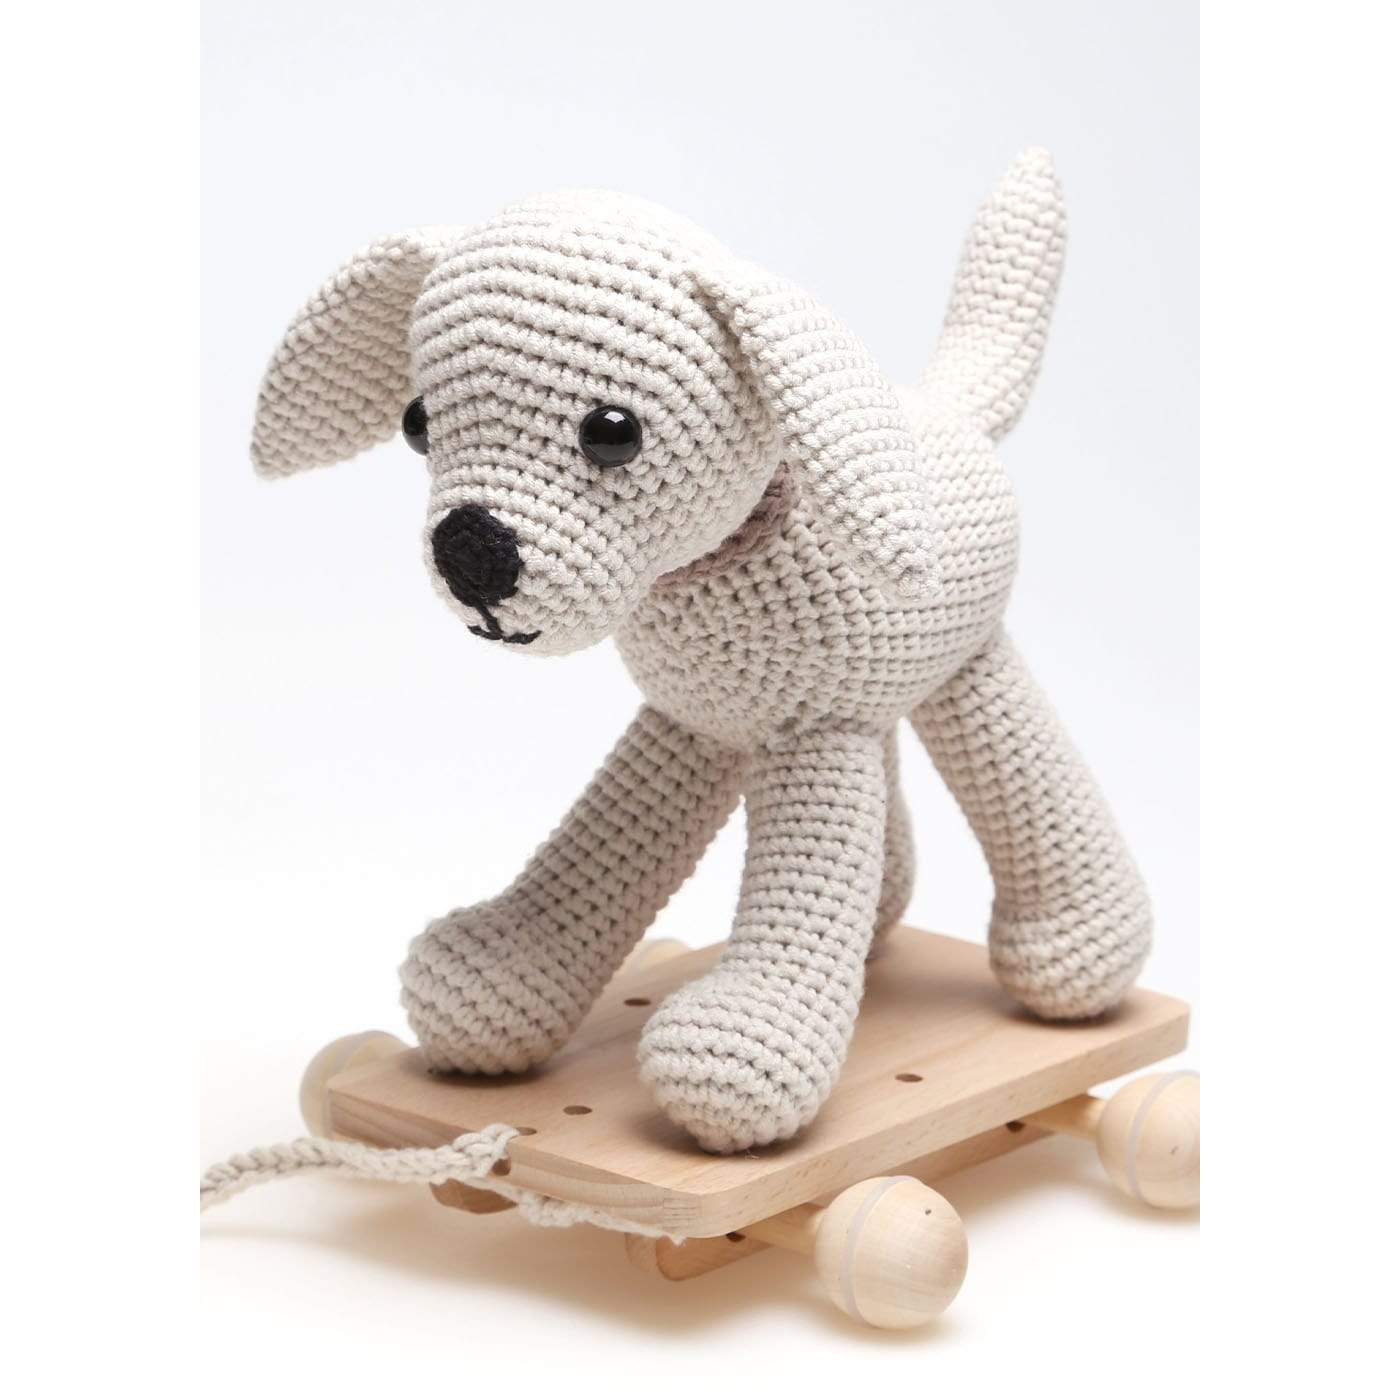 Planeet fictie tot nu Haakpakket: Trekdier Hond Poppy | CuteDutch